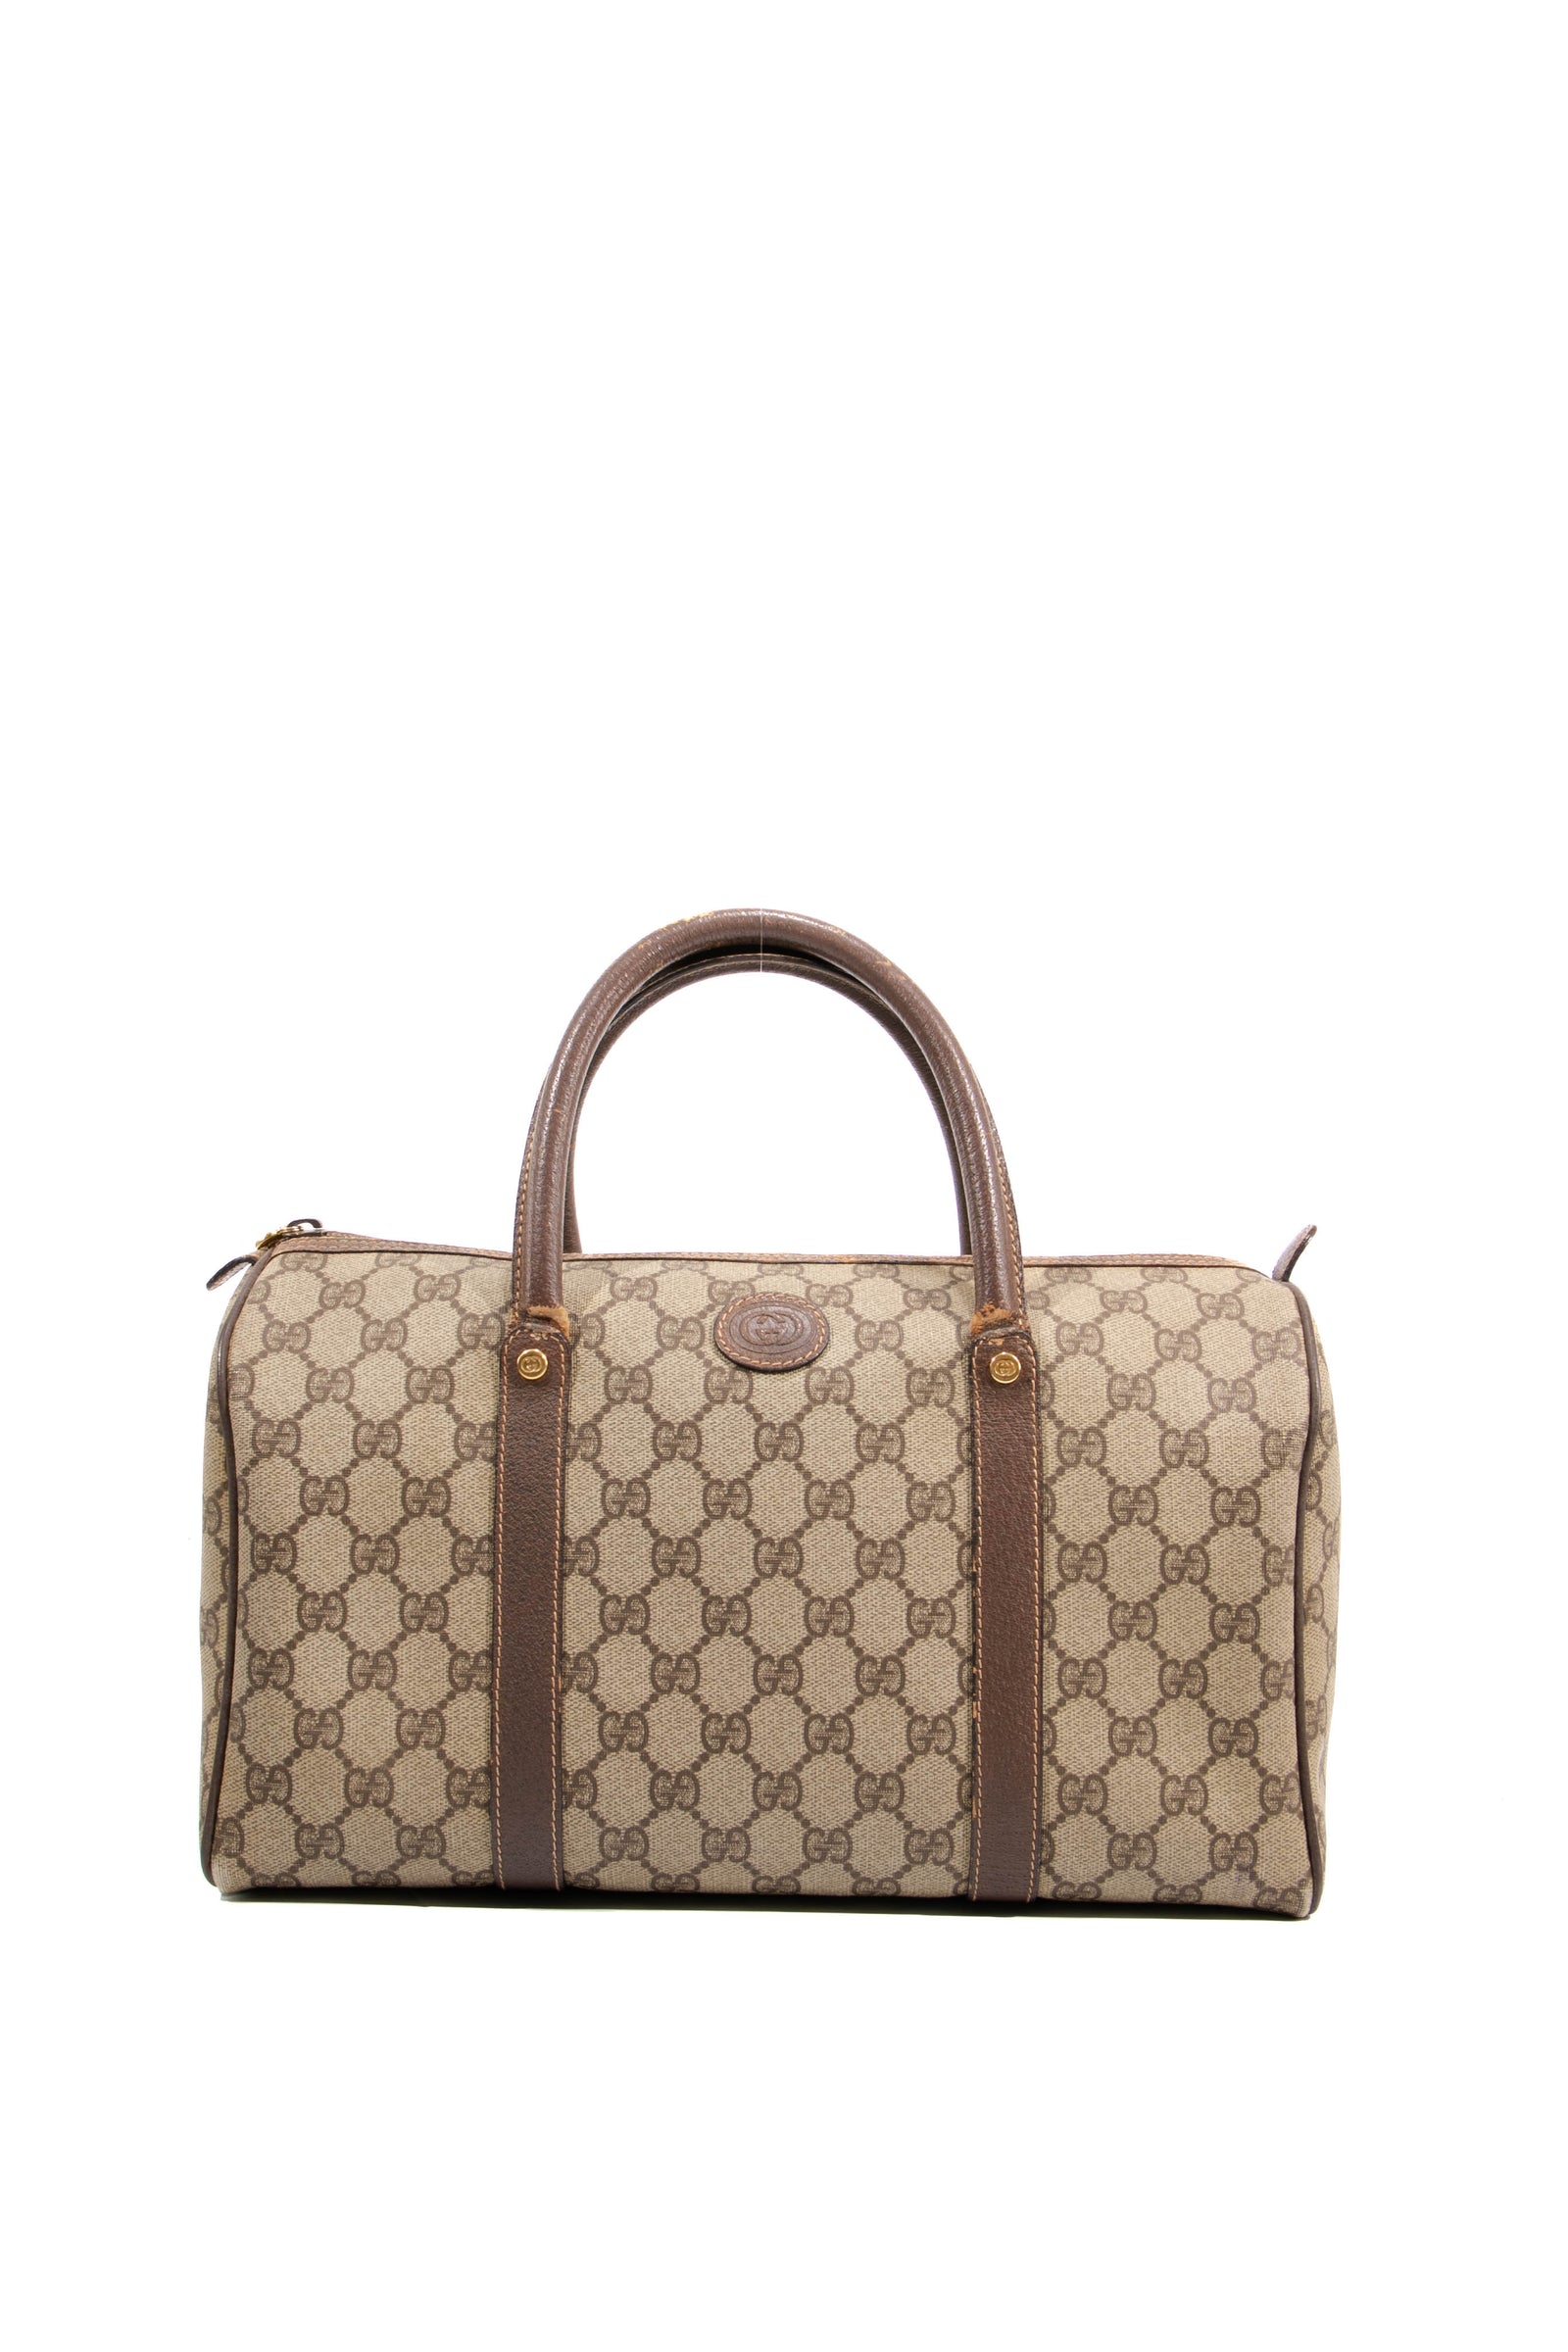 Shop Twiggy's look with the Louis Vuitton Monogram Papillon bag